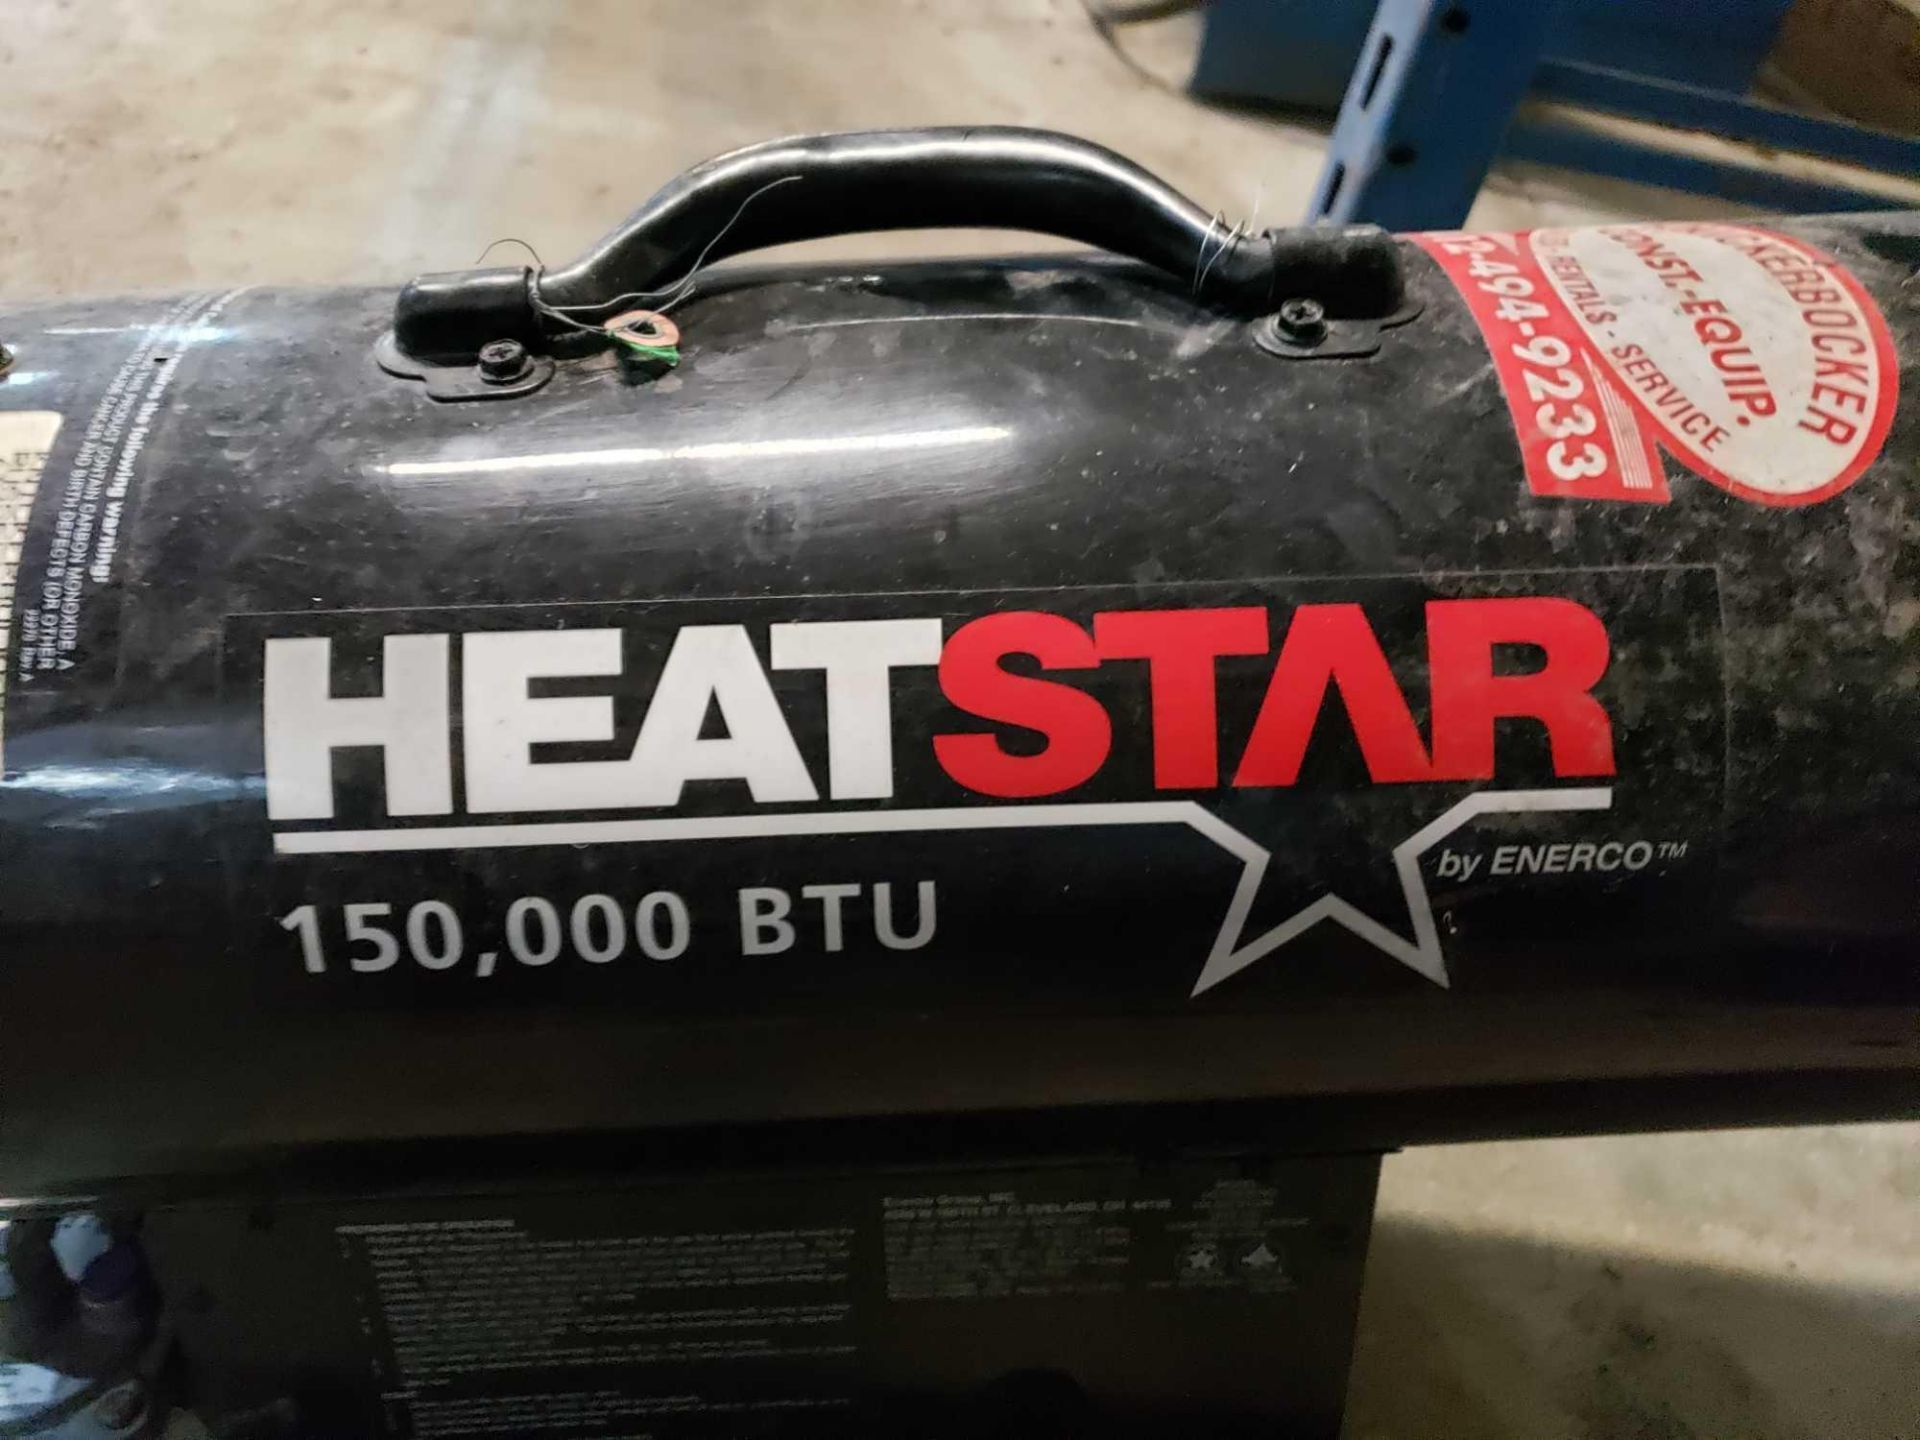 HeatStar model HS170FATNG natural gas construction heater. - Image 2 of 4